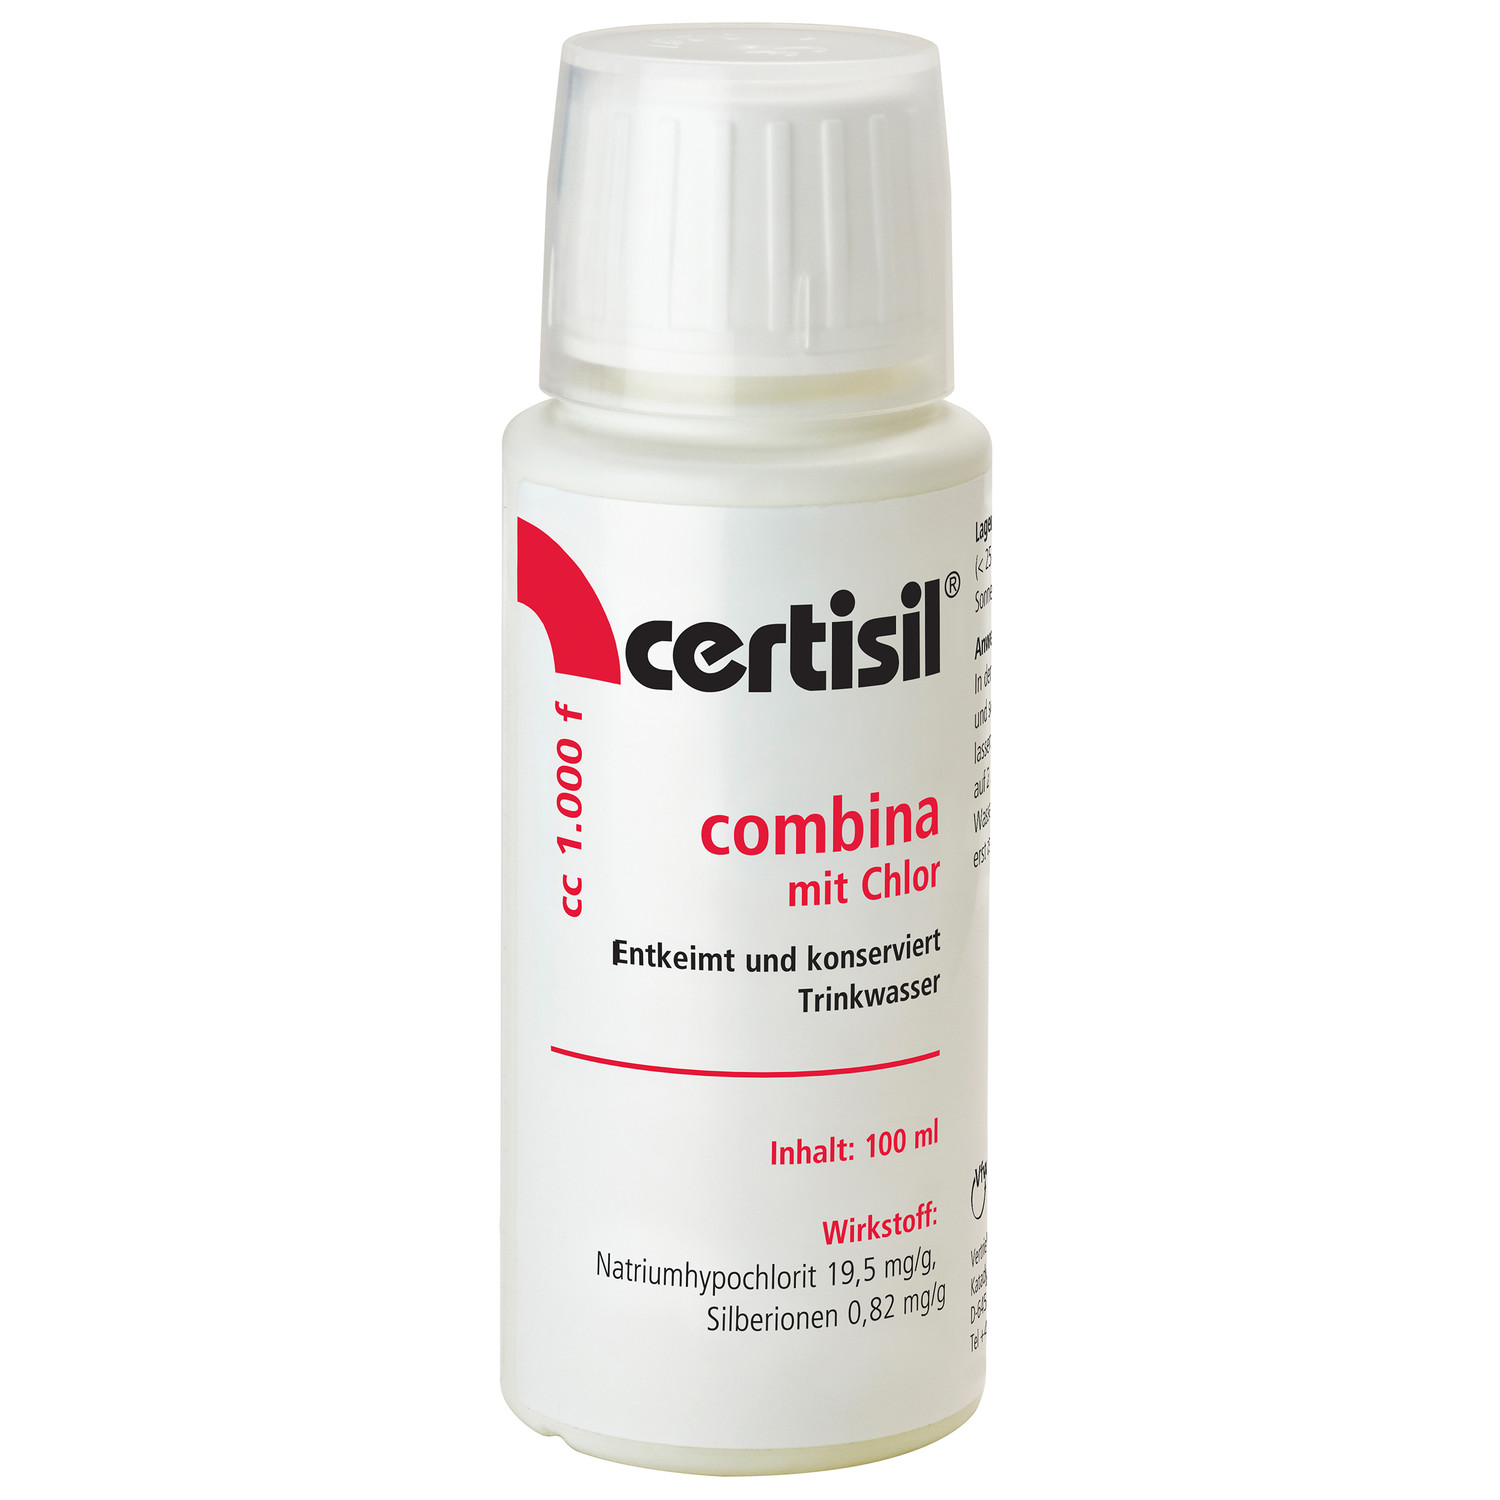 Certisil Combina cc 1.000 F (100 ml Flüssigkeit) zur Wasserdesinfektion und -konservierung